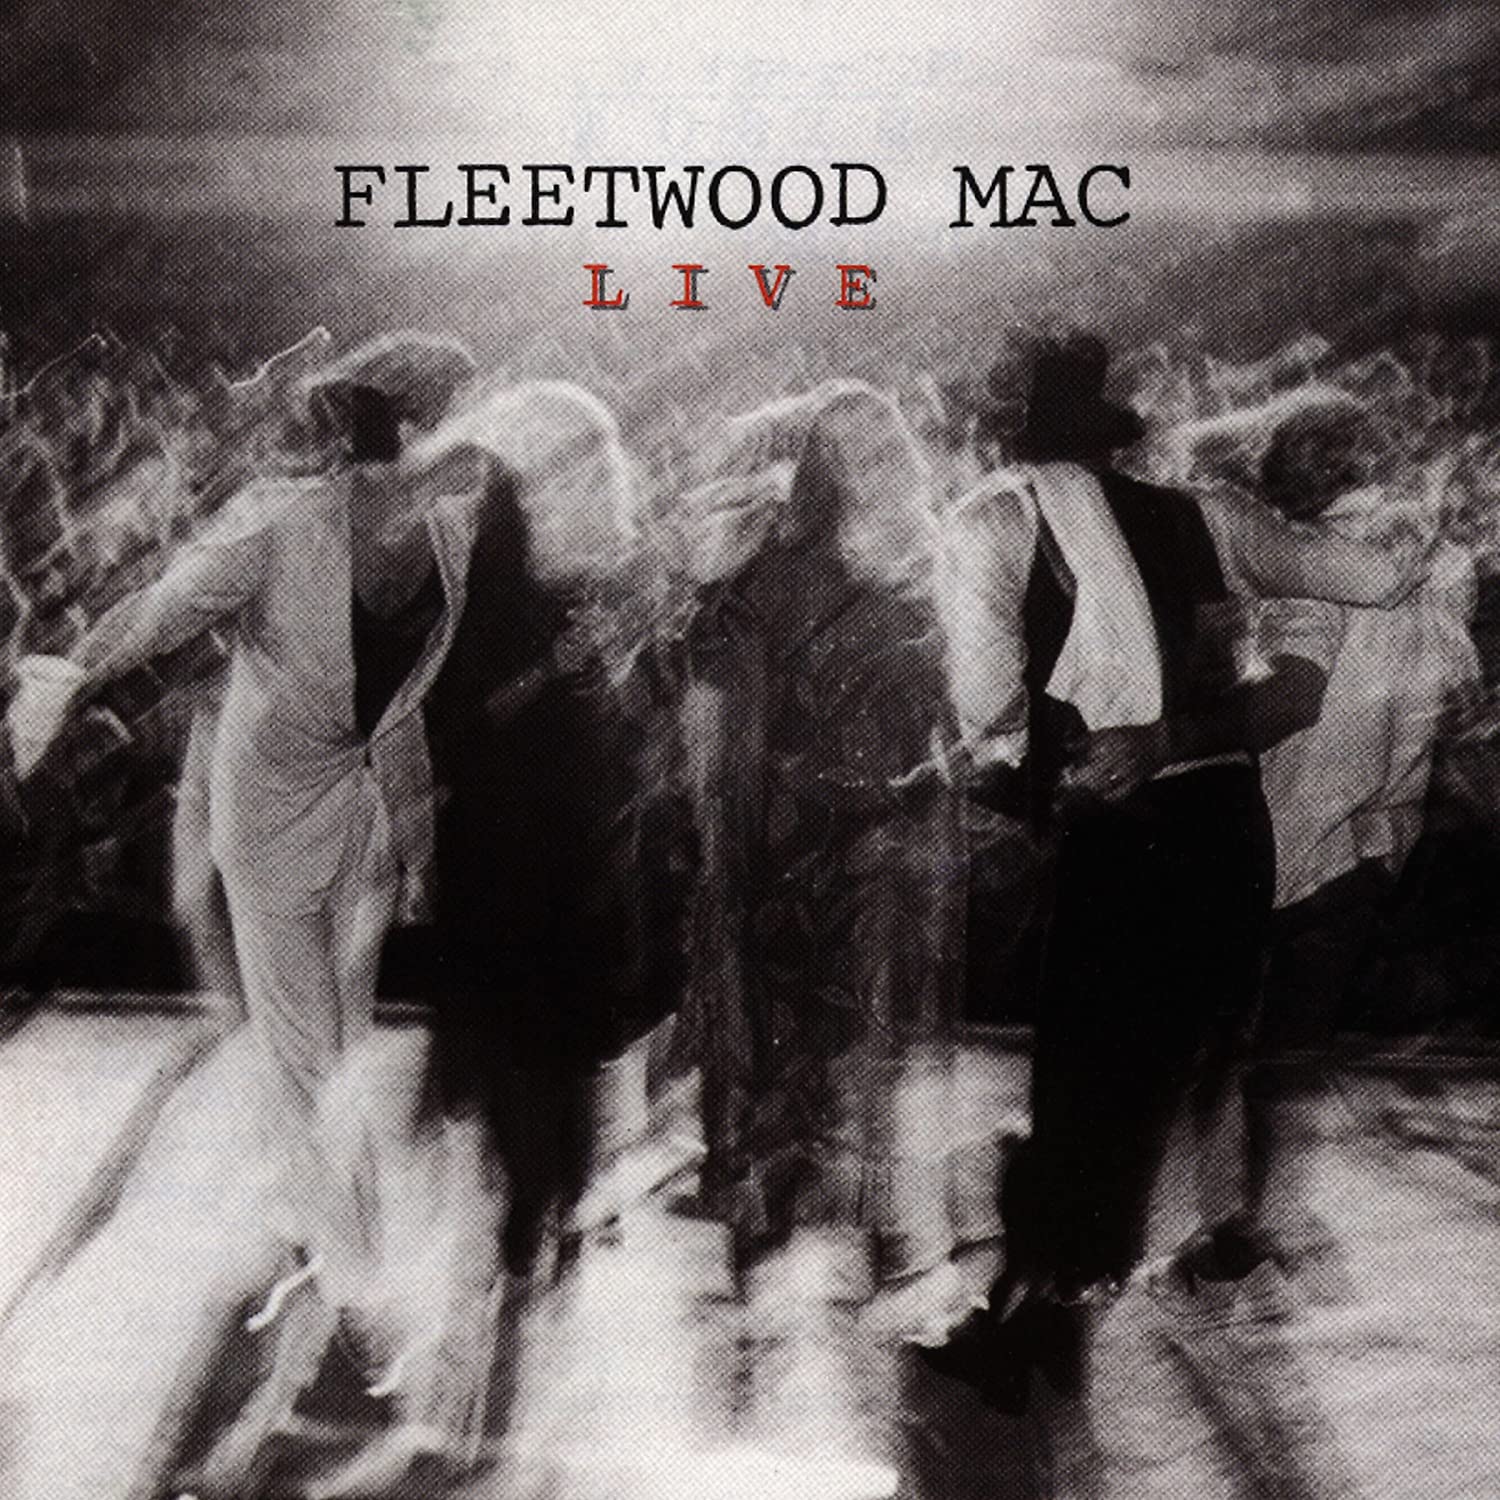 Fleetwood Mac « Live » une setlist de rêve truffée de tubes